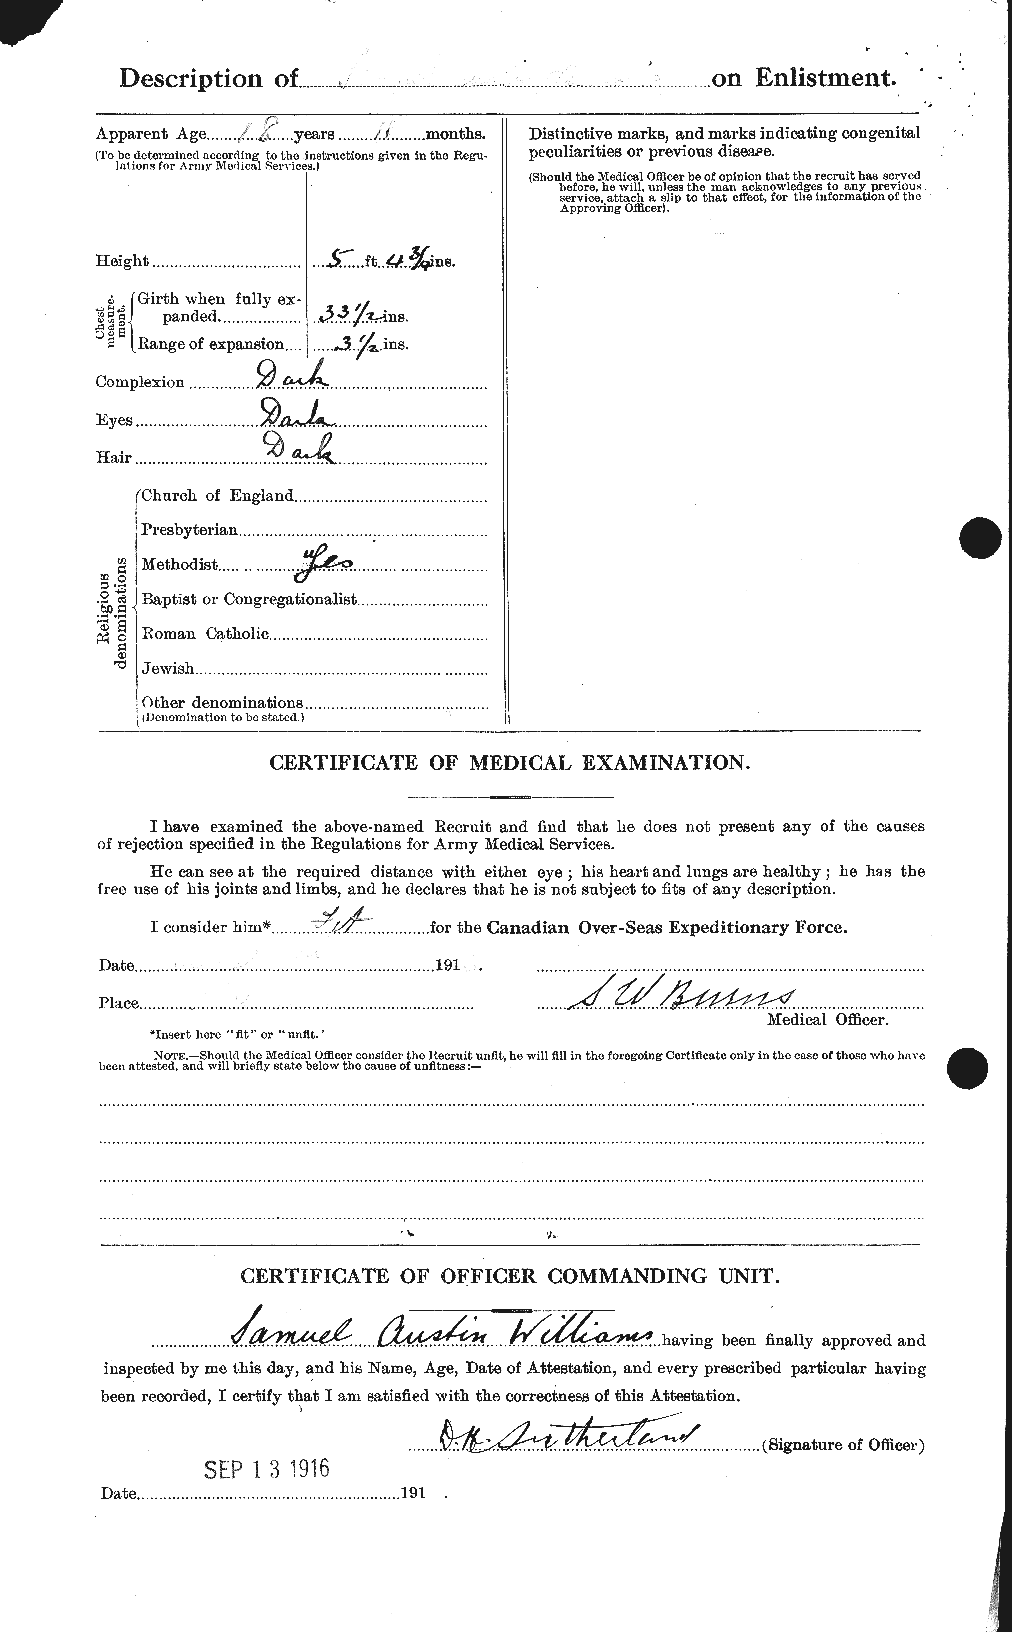 Dossiers du Personnel de la Première Guerre mondiale - CEC 676572b